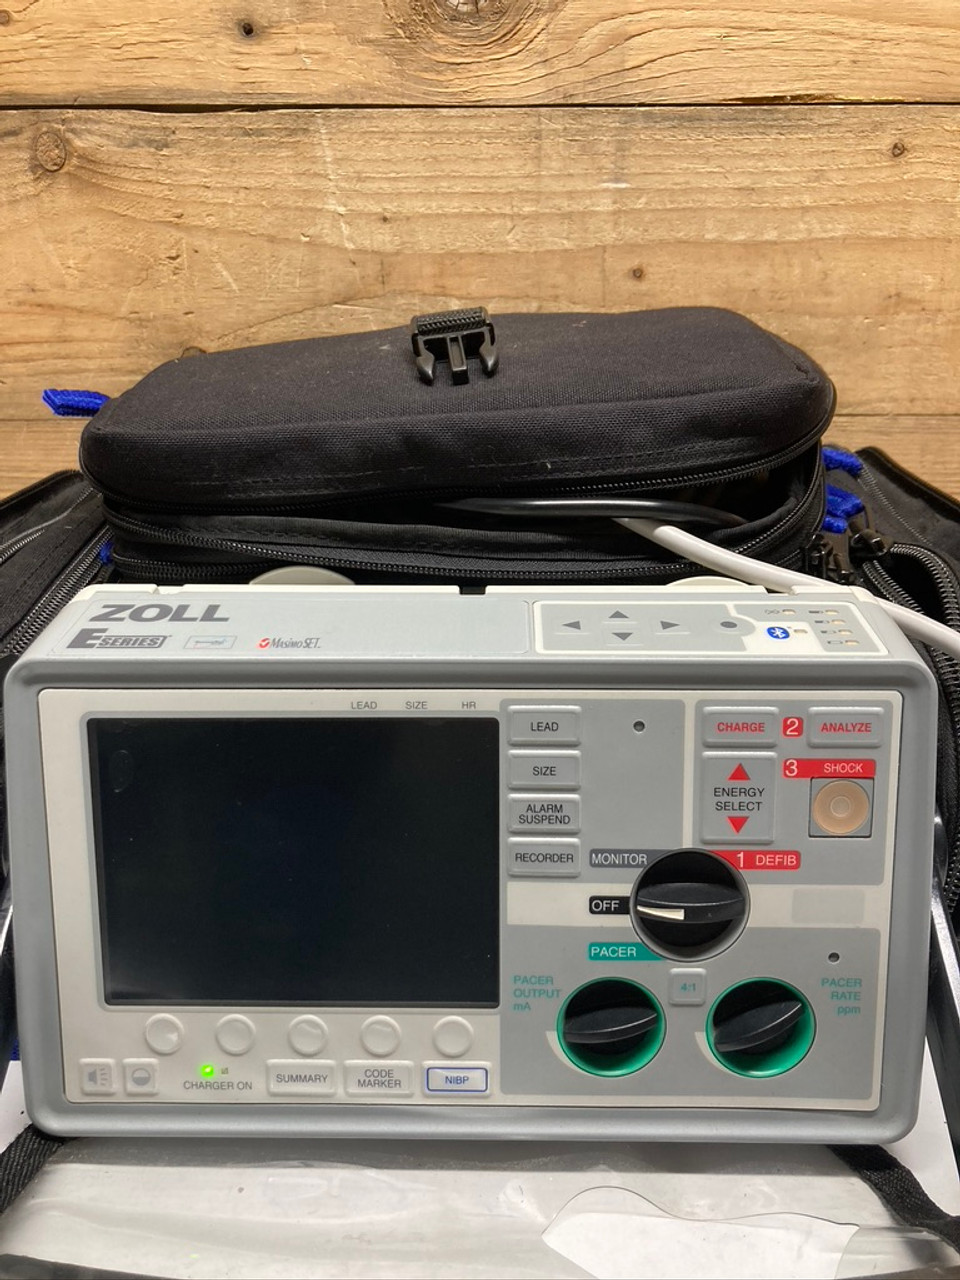 Zoll E-Series Defibrillator (For Parts)